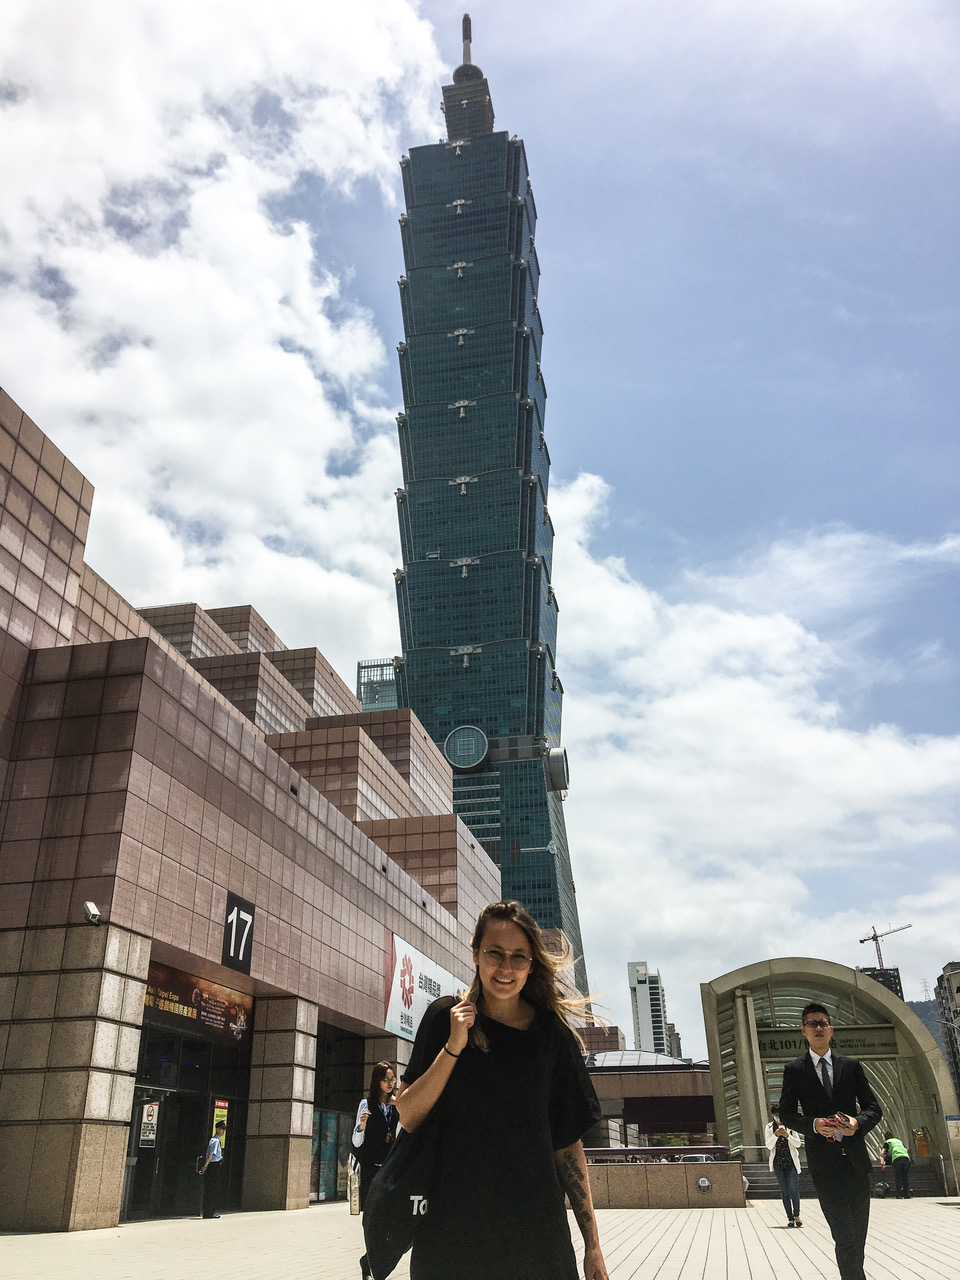 Visiter Taipei en 4 jours et voir la tour 101